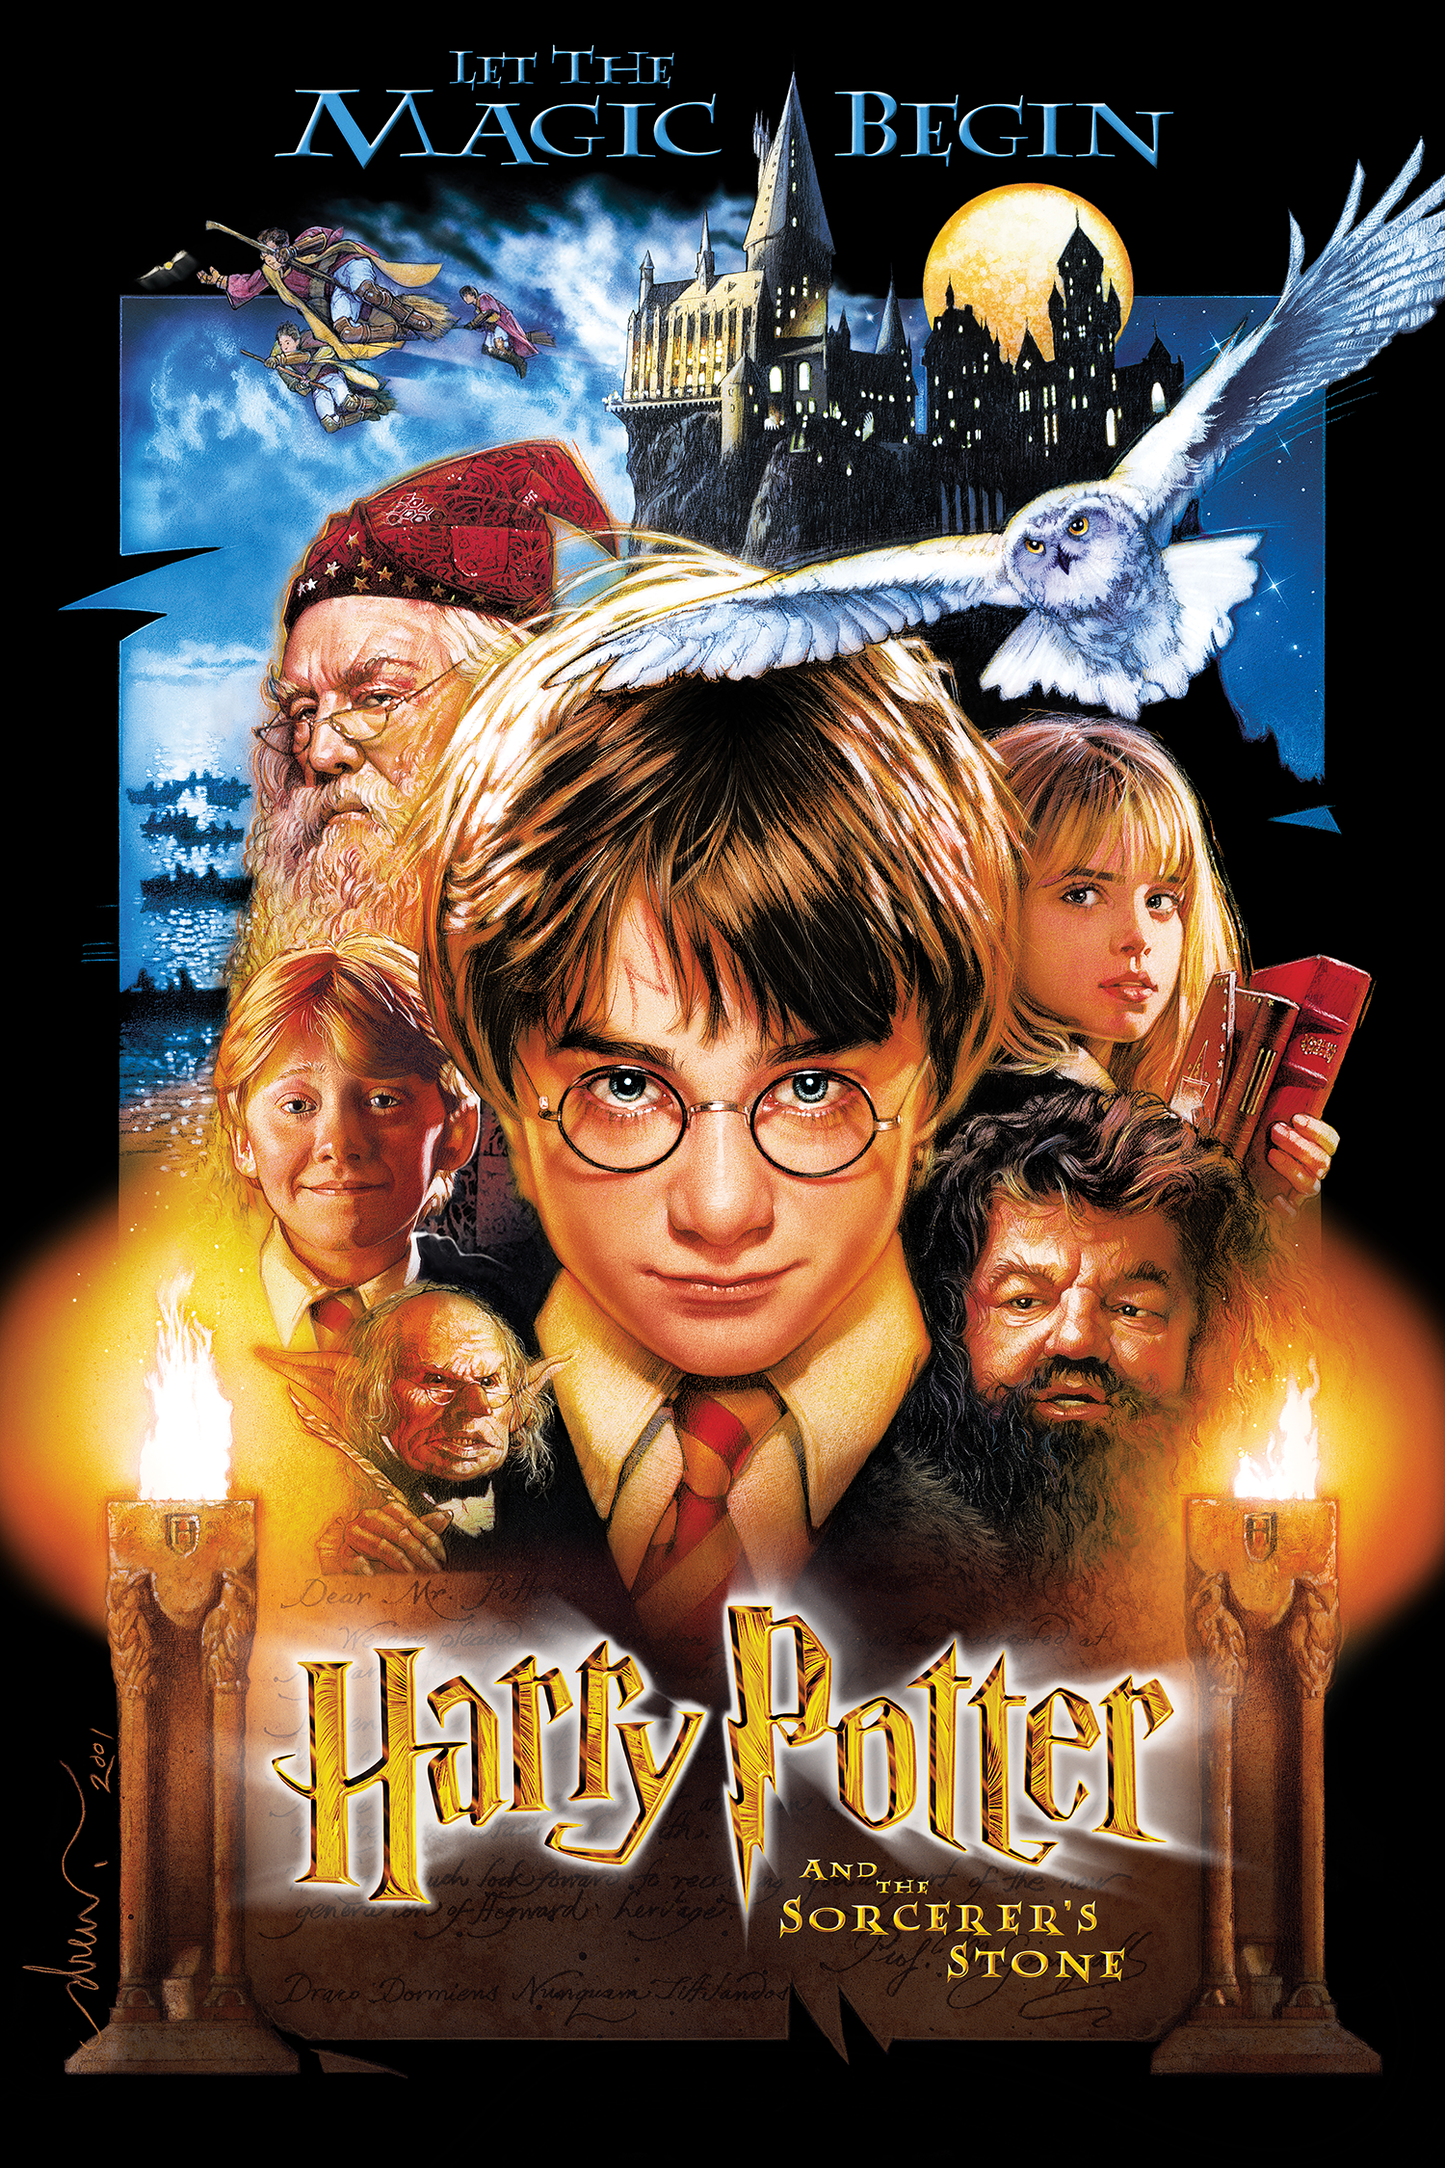 Drew Struzan "Harry Potter and the Sorcerer's Stone" SET